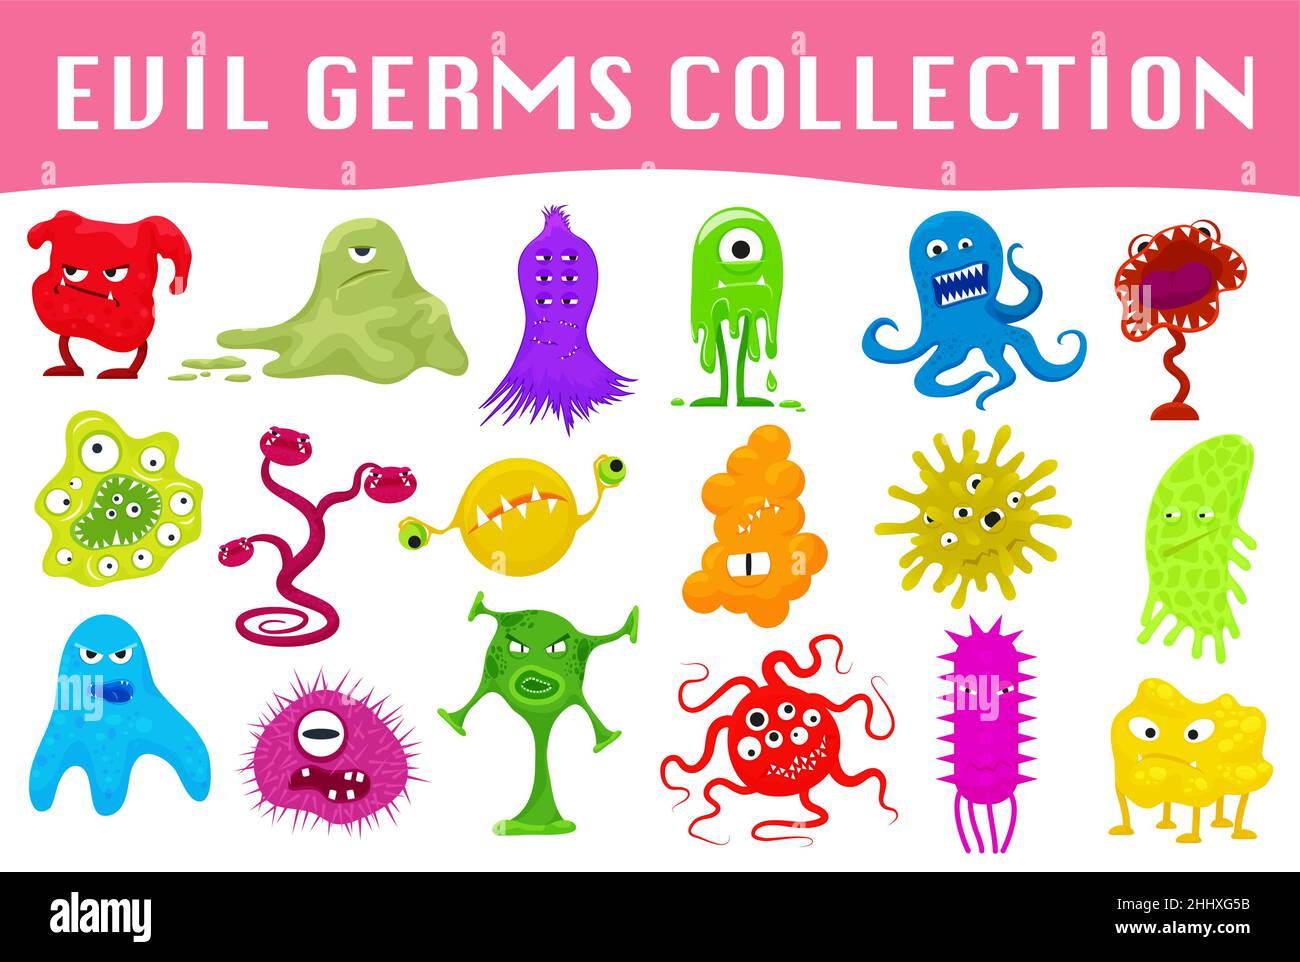 Ensemble de dessin animé germes en colère, virus, microbes et monstres illustration vectorielle Illustration de Vecteur